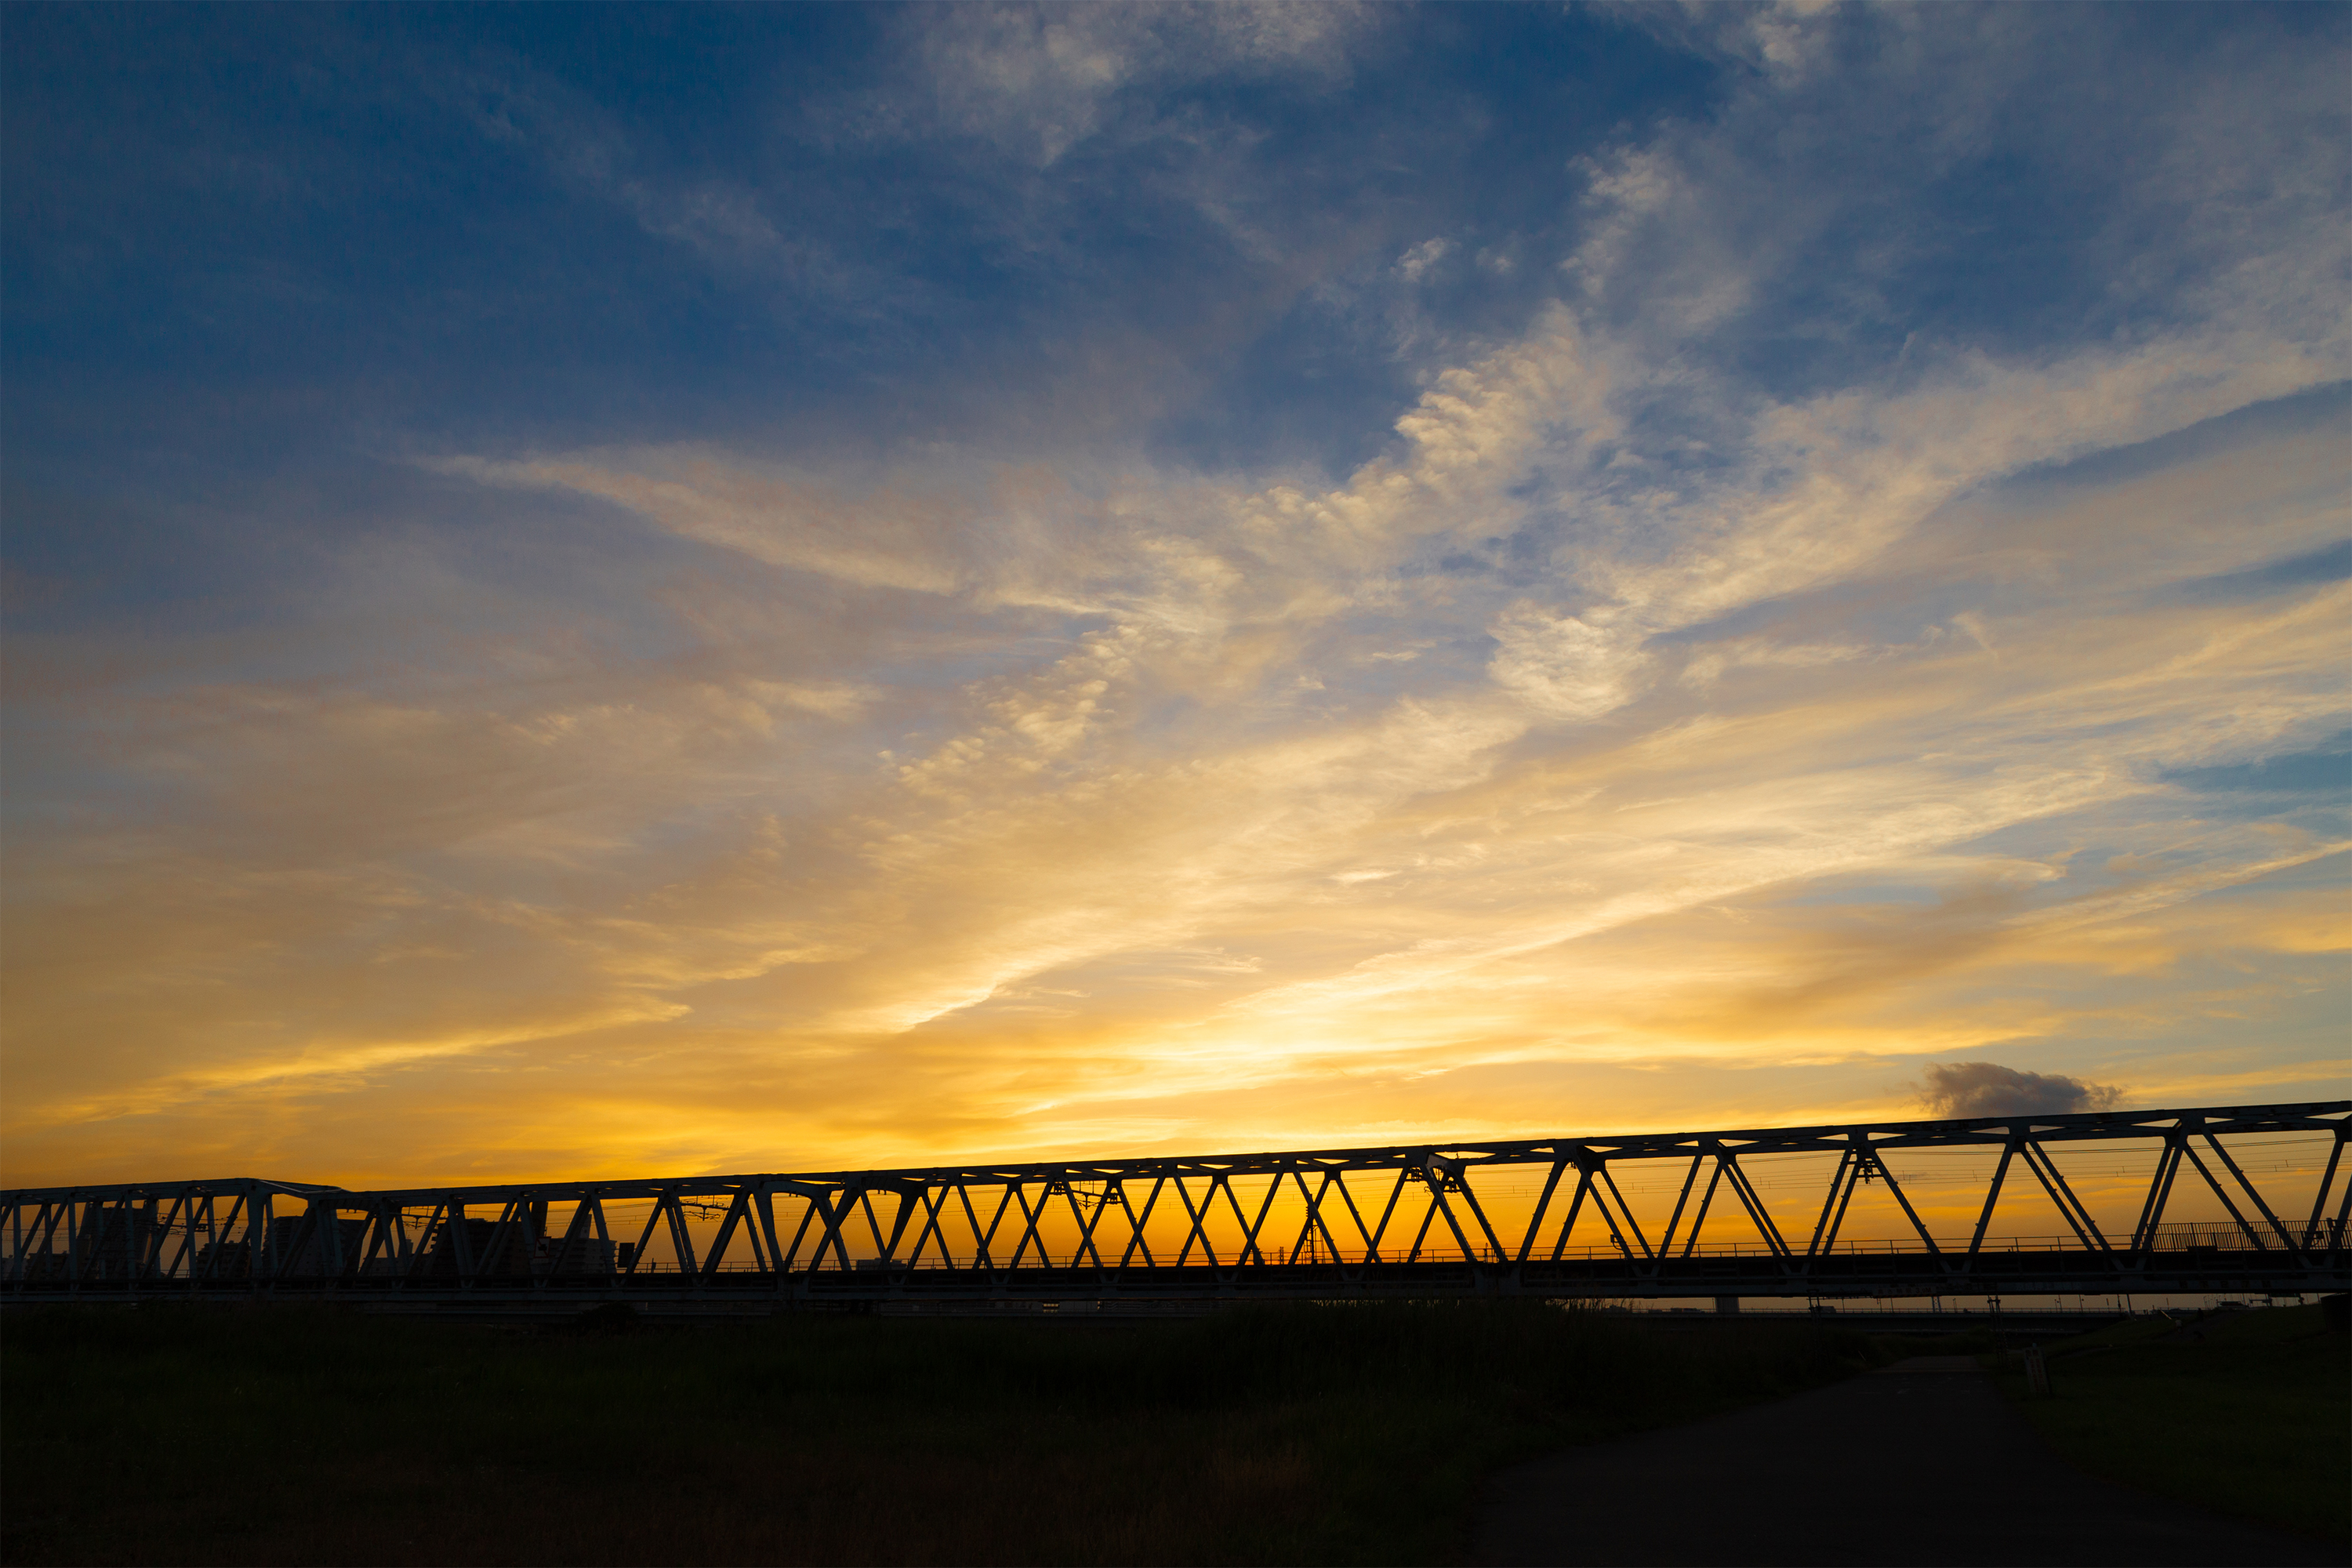 鉄橋と夕焼けの風景 無料の高画質フリー写真素材 イメージズラボ